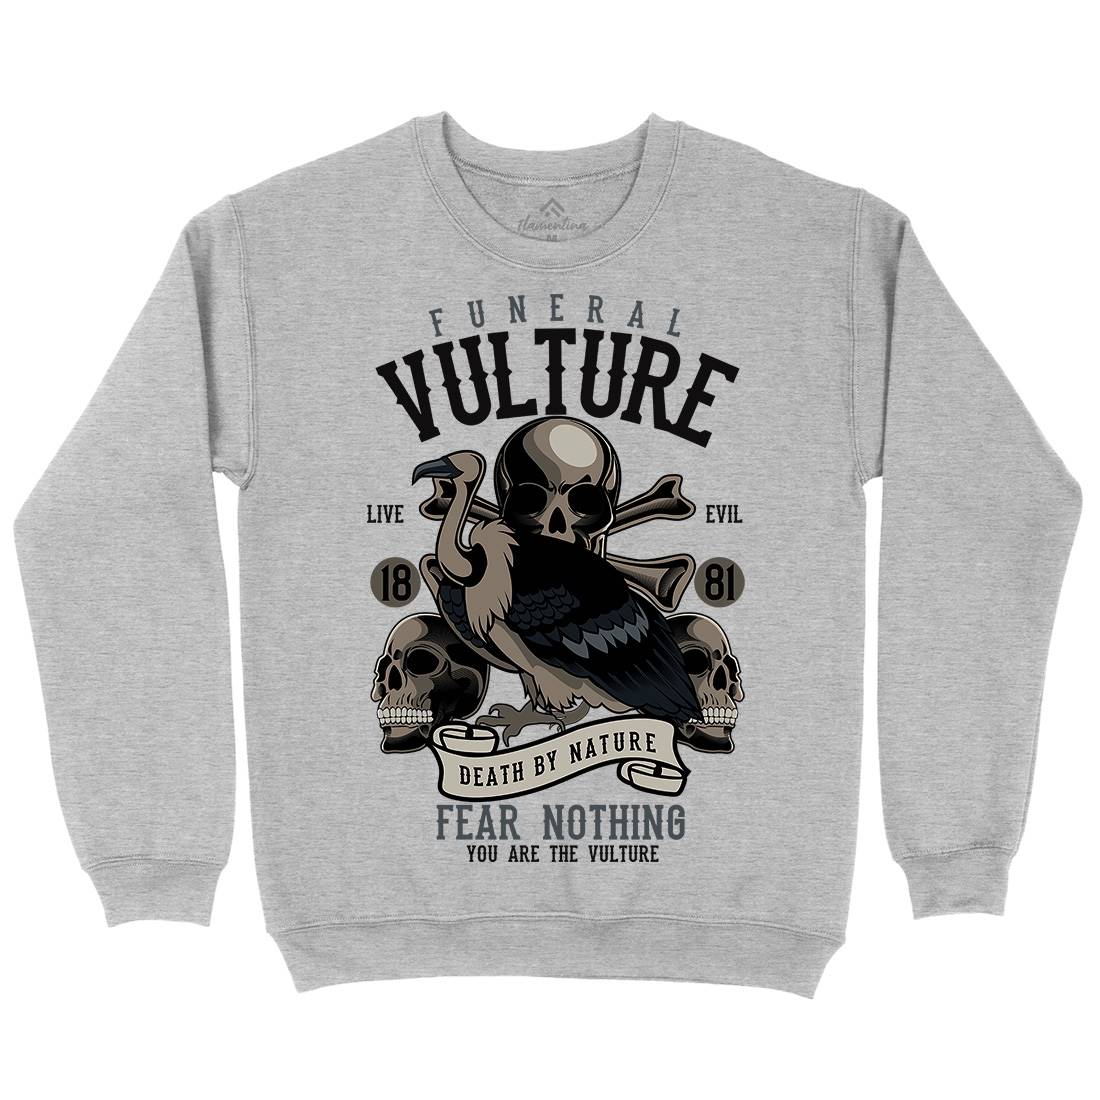 Vulture Kids Crew Neck Sweatshirt Horror C471